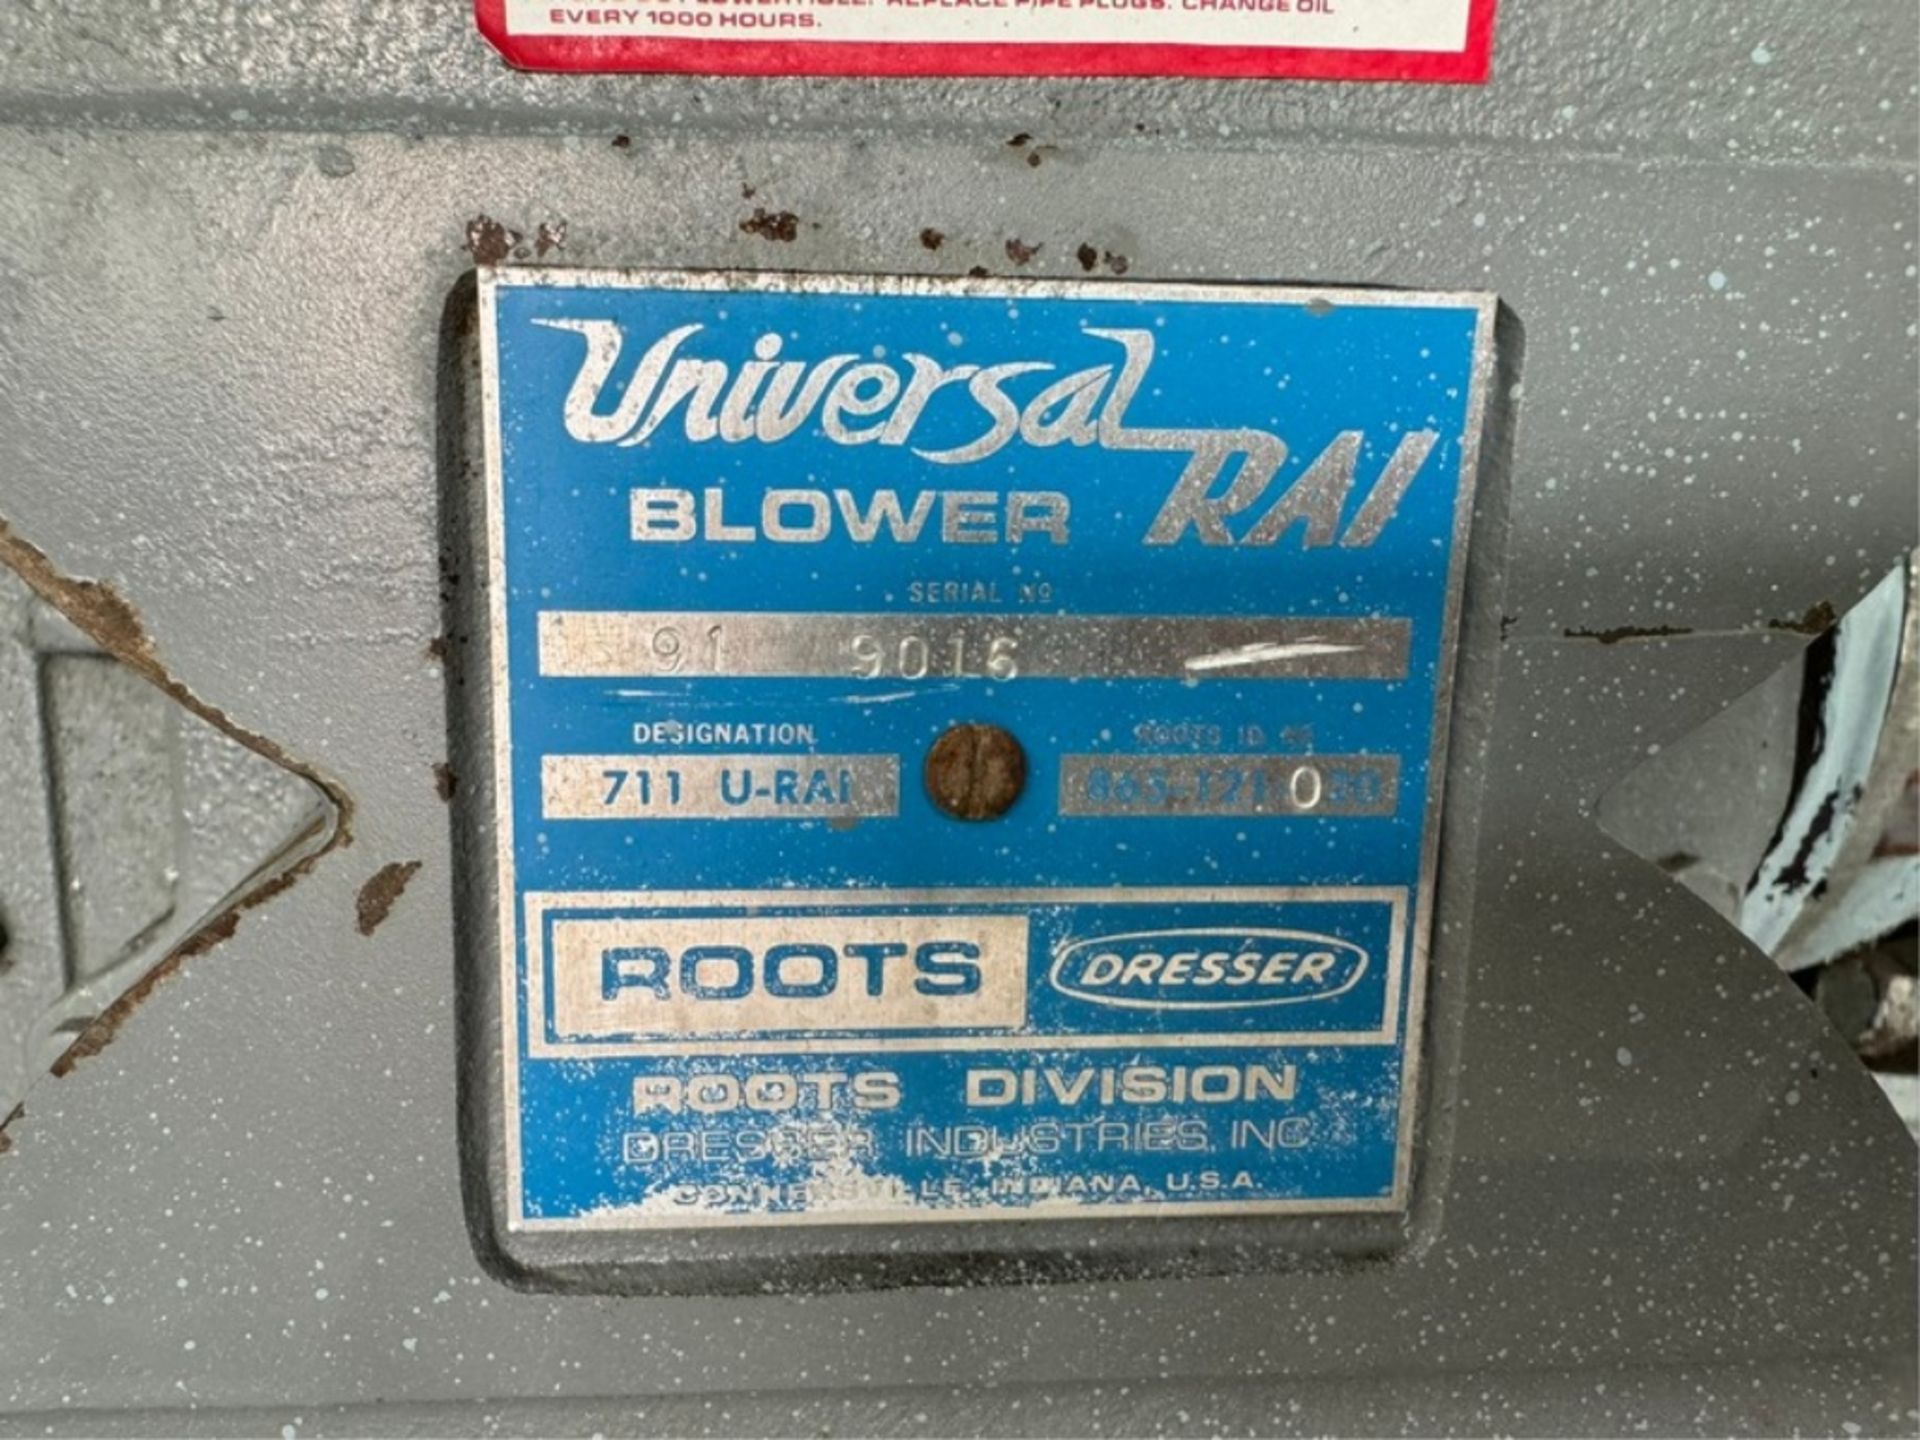 Universal 30 hp Blower, S/N 91 9016, Reliance 1765 RPM, 230/460 Volts, 3 Phase (INV#99694) ( - Bild 3 aus 6